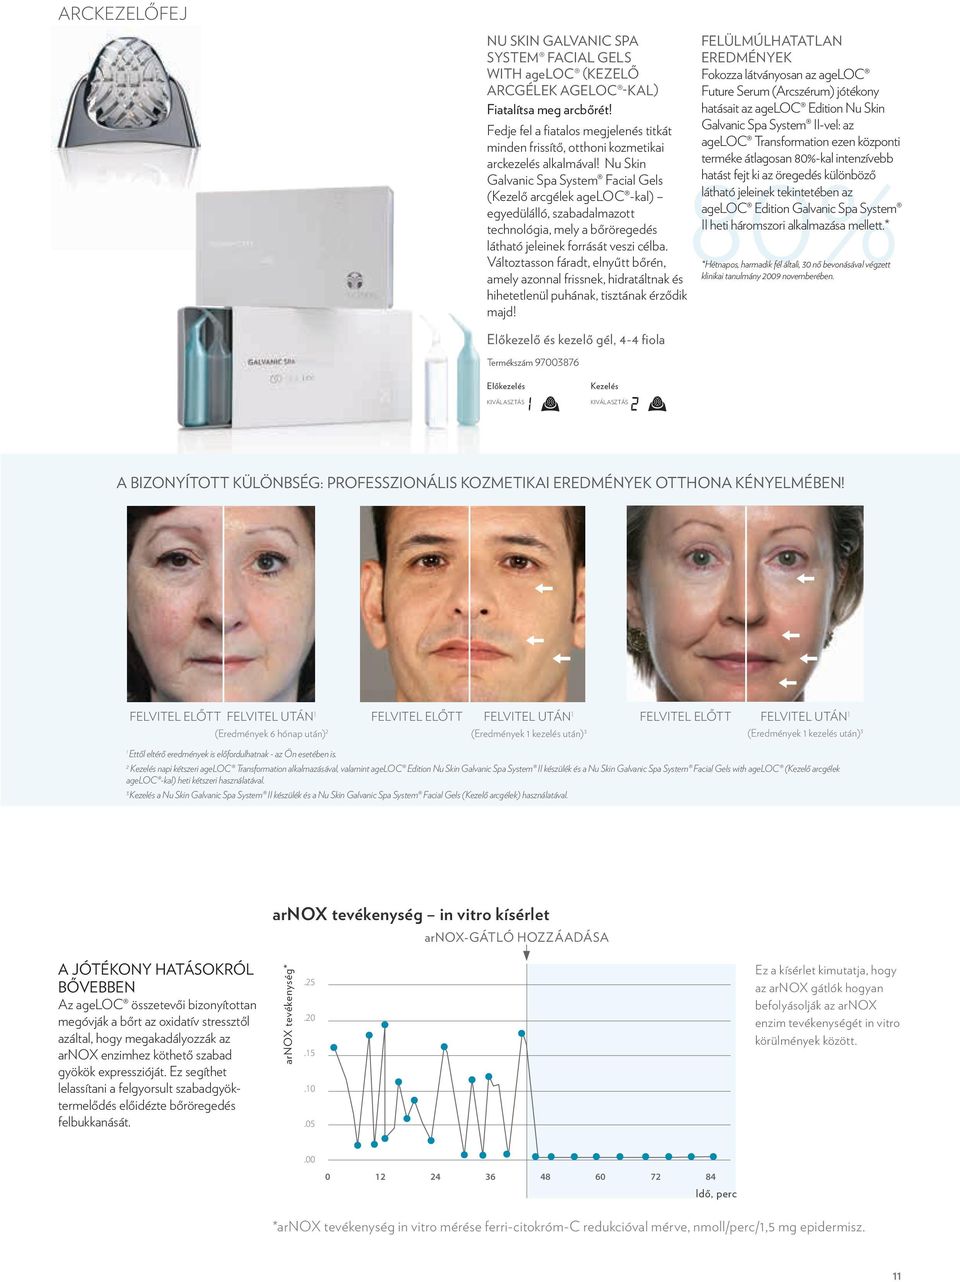 Nu Skin Galvanic Spa System Facial Gels (Kezelő arcgélek ageloc -kal) egyedülálló, szabadalmazott technológia, mely a bőröregedés látható jeleinek forrását veszi célba.